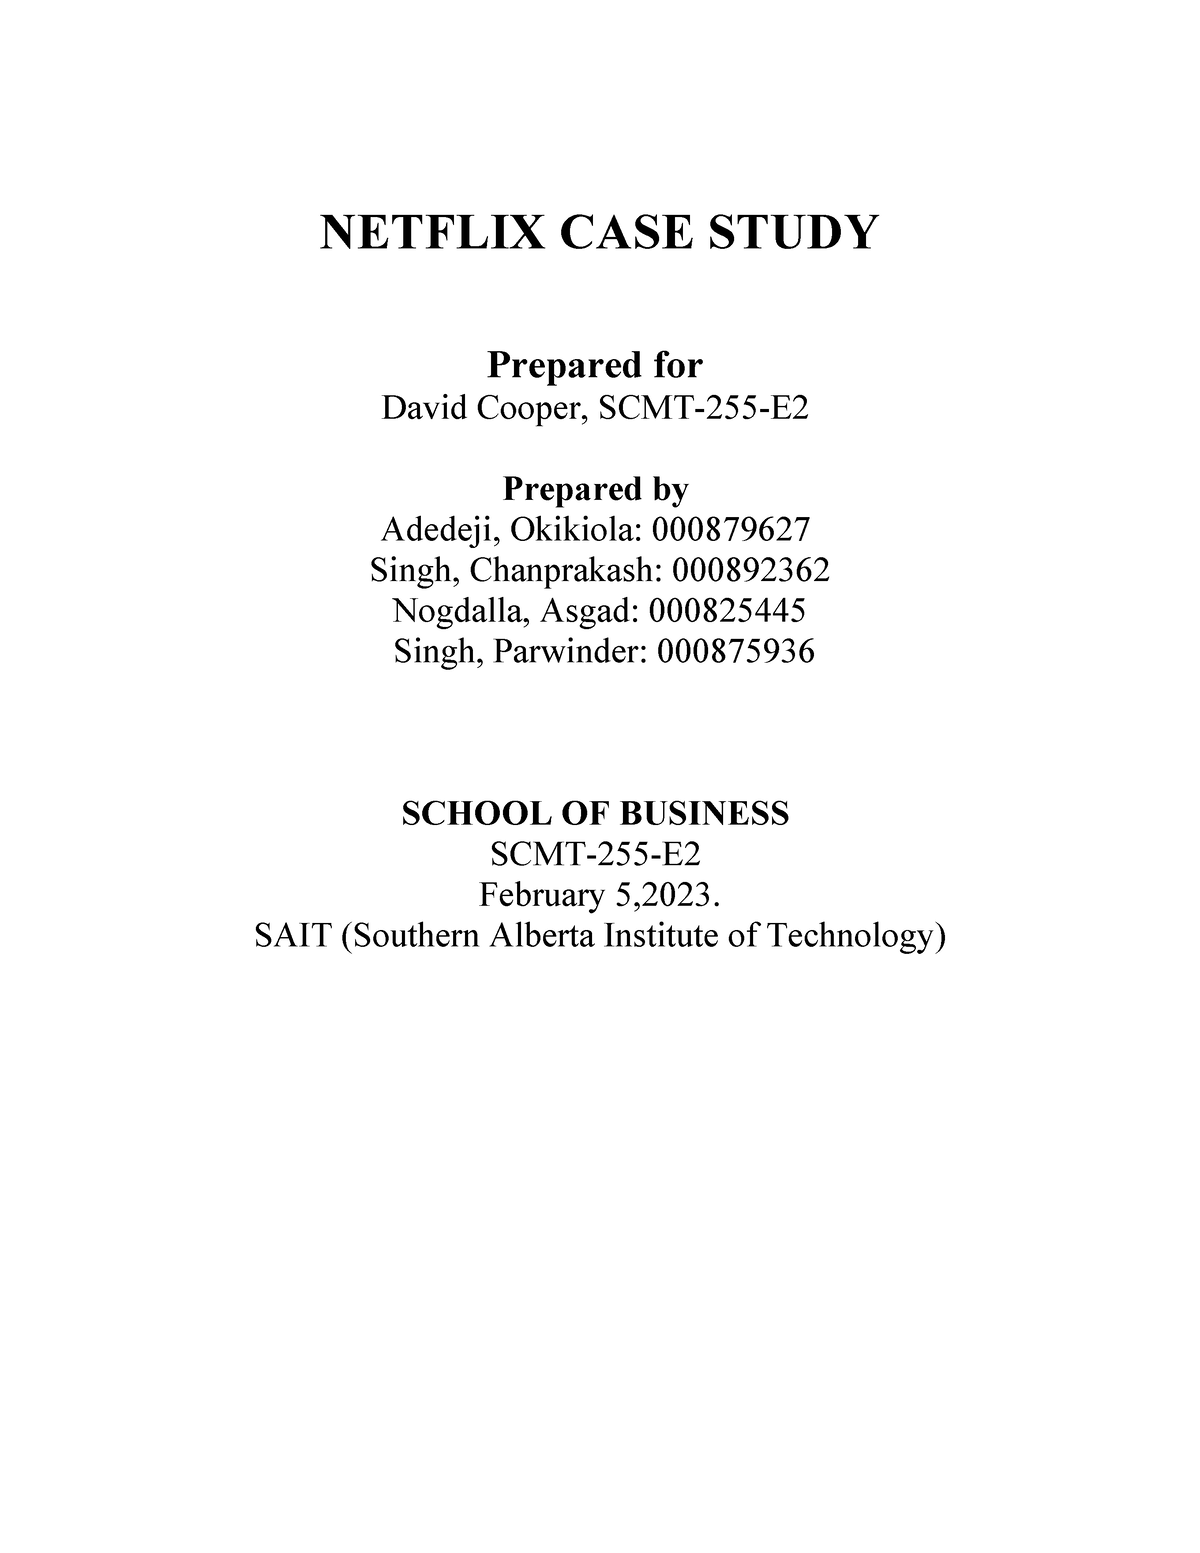 netflix supply chain case study